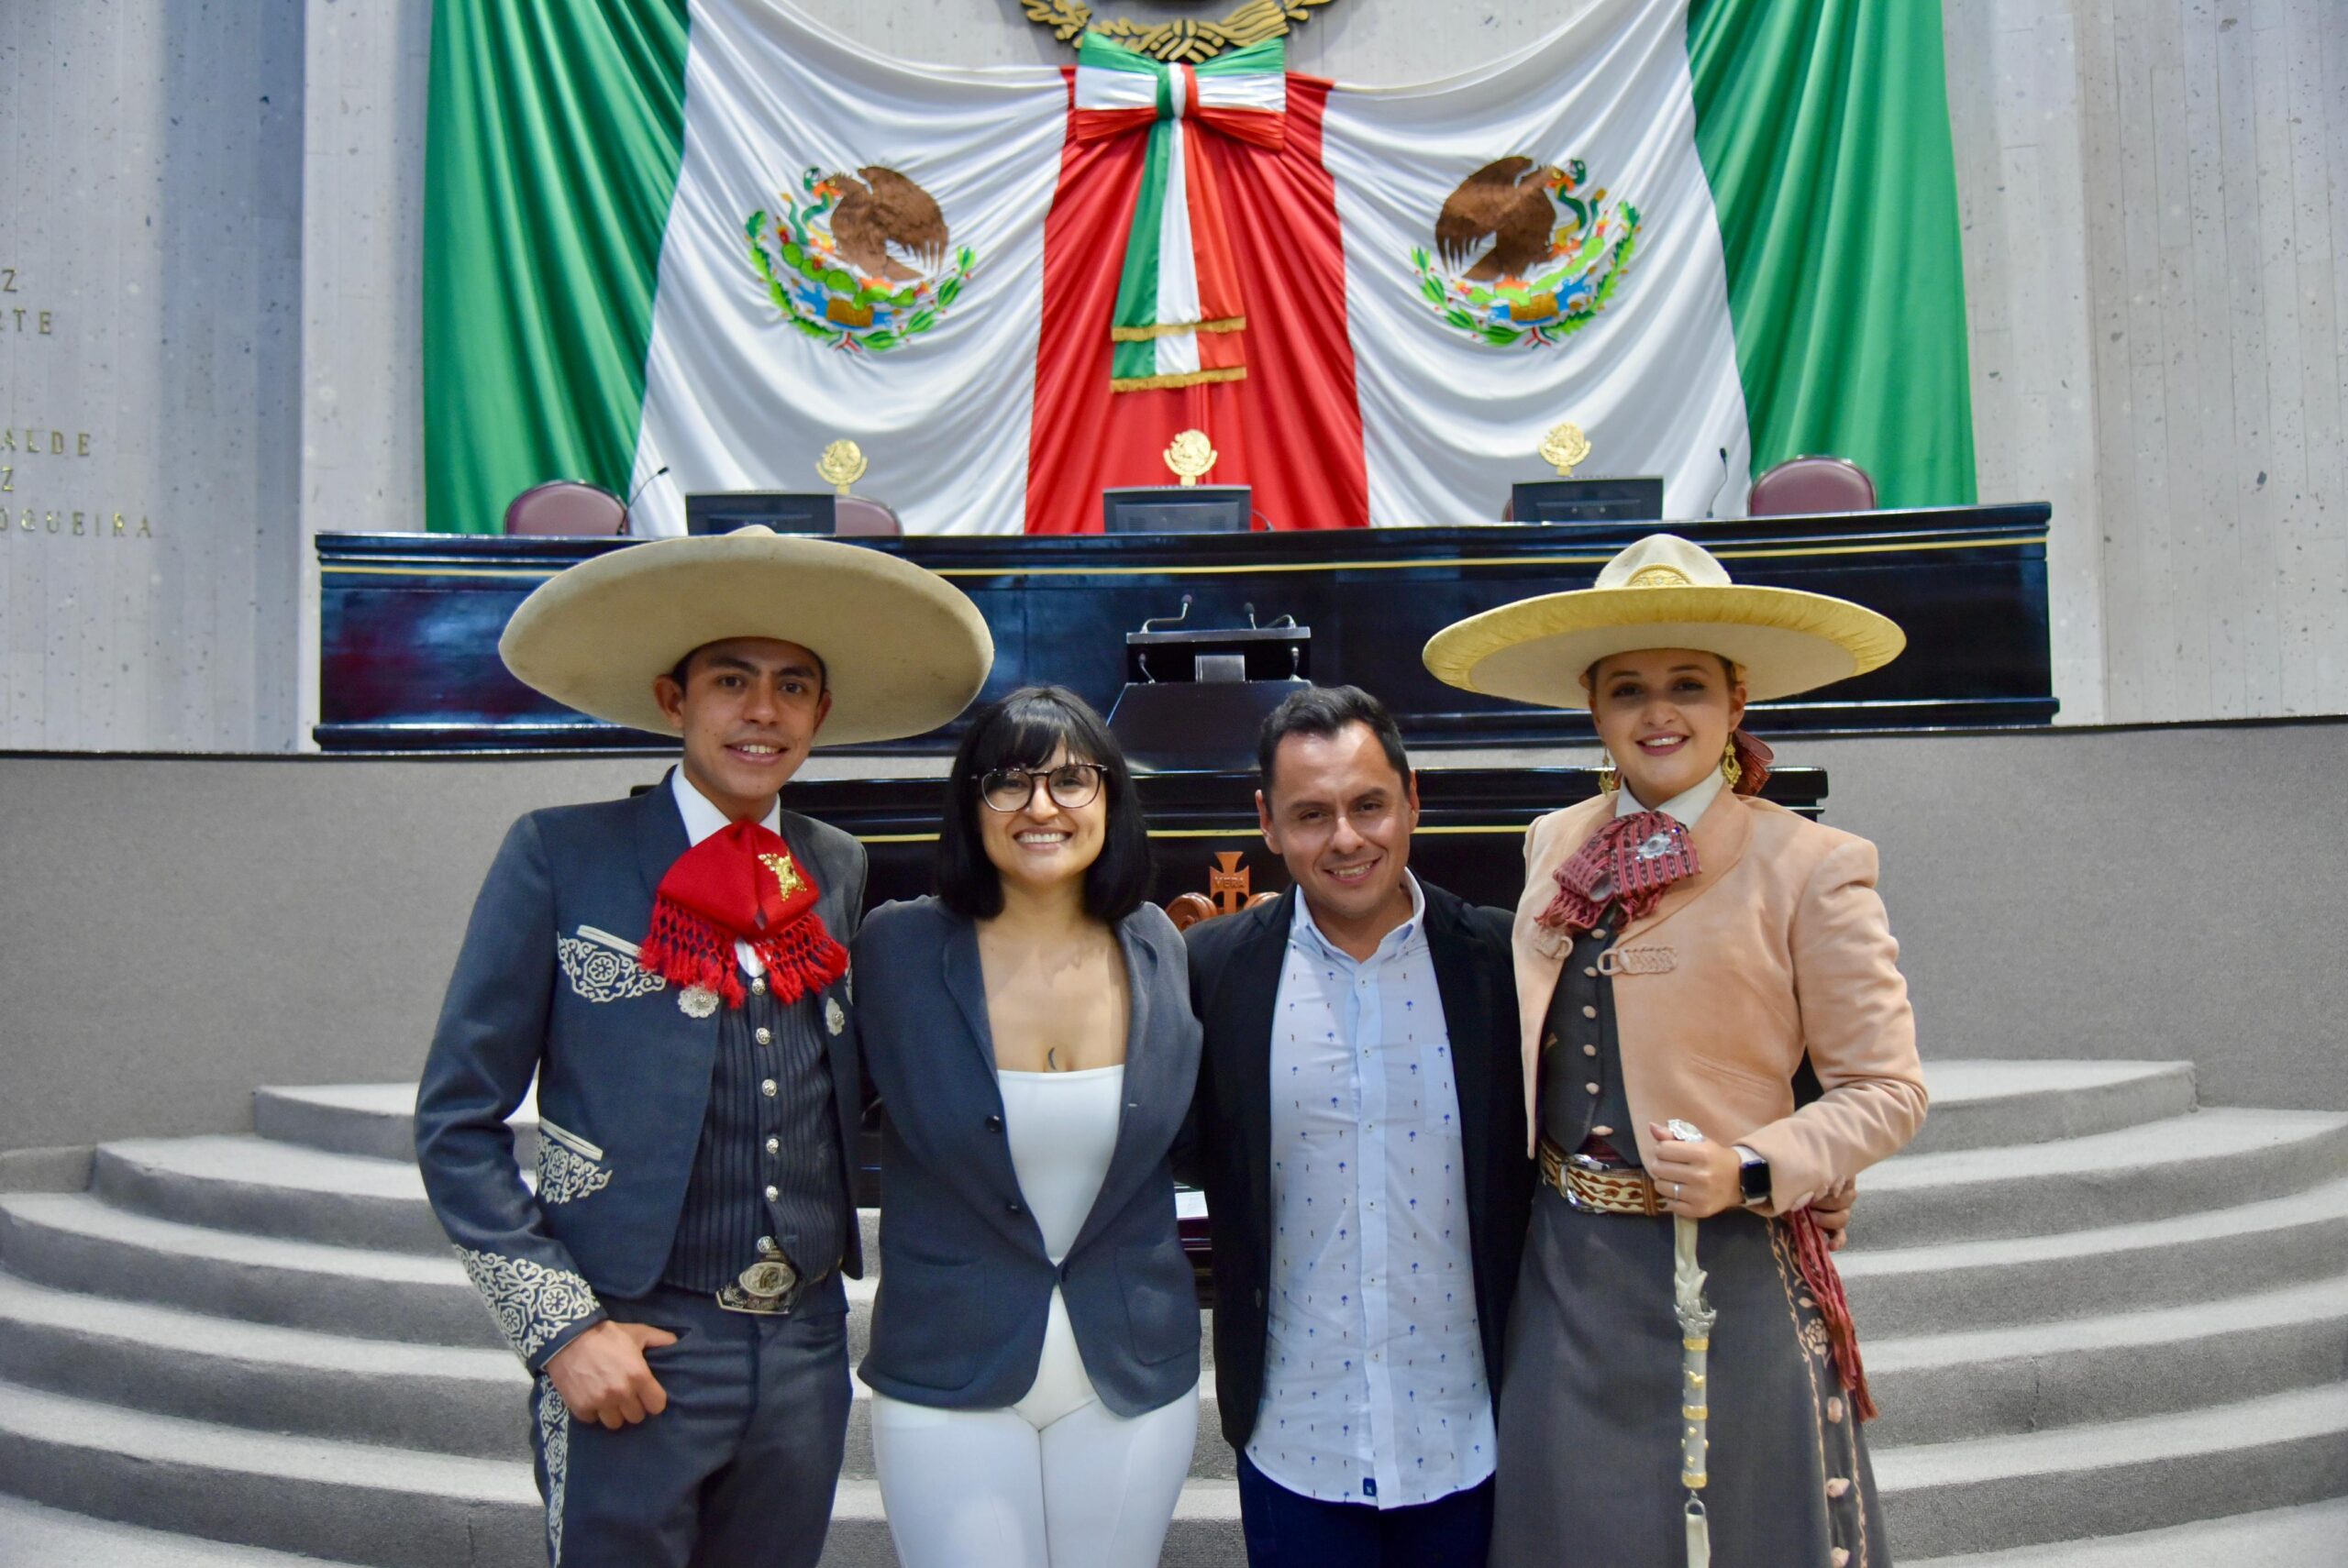 La Charrería en Xalapa: Tradición, pasión y compromiso con la cultura mexicana